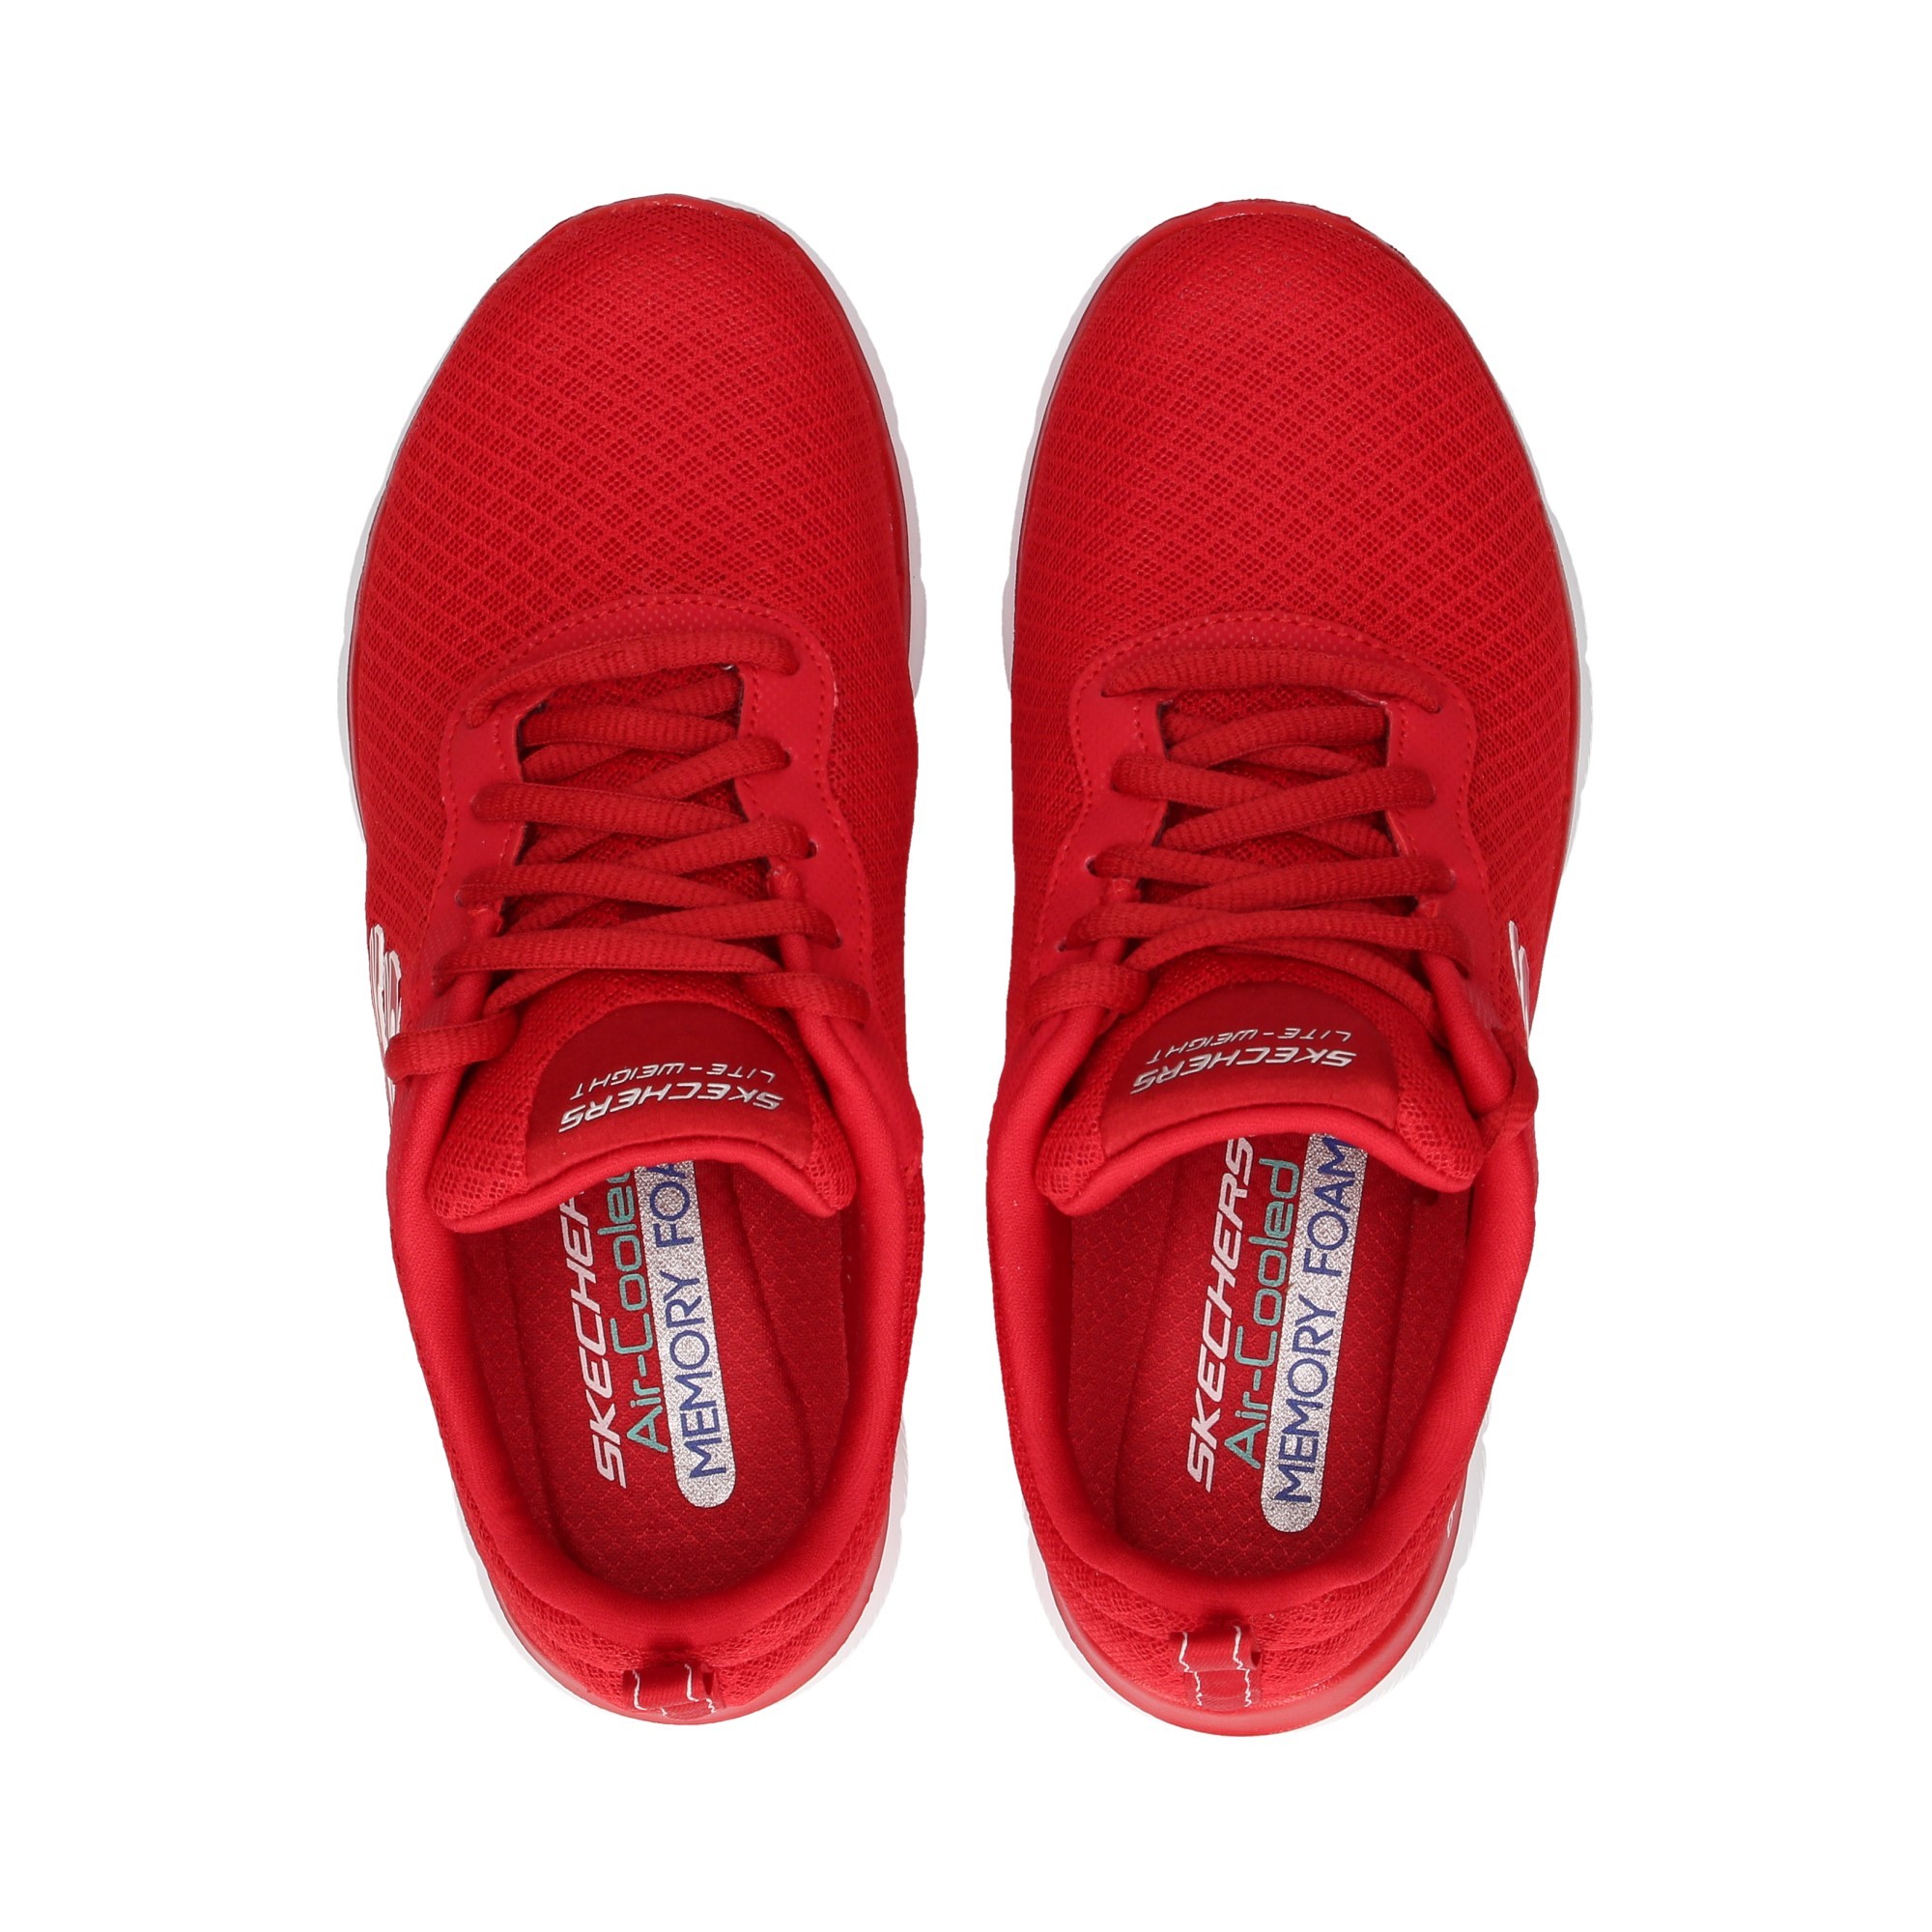 skechers red sneakers